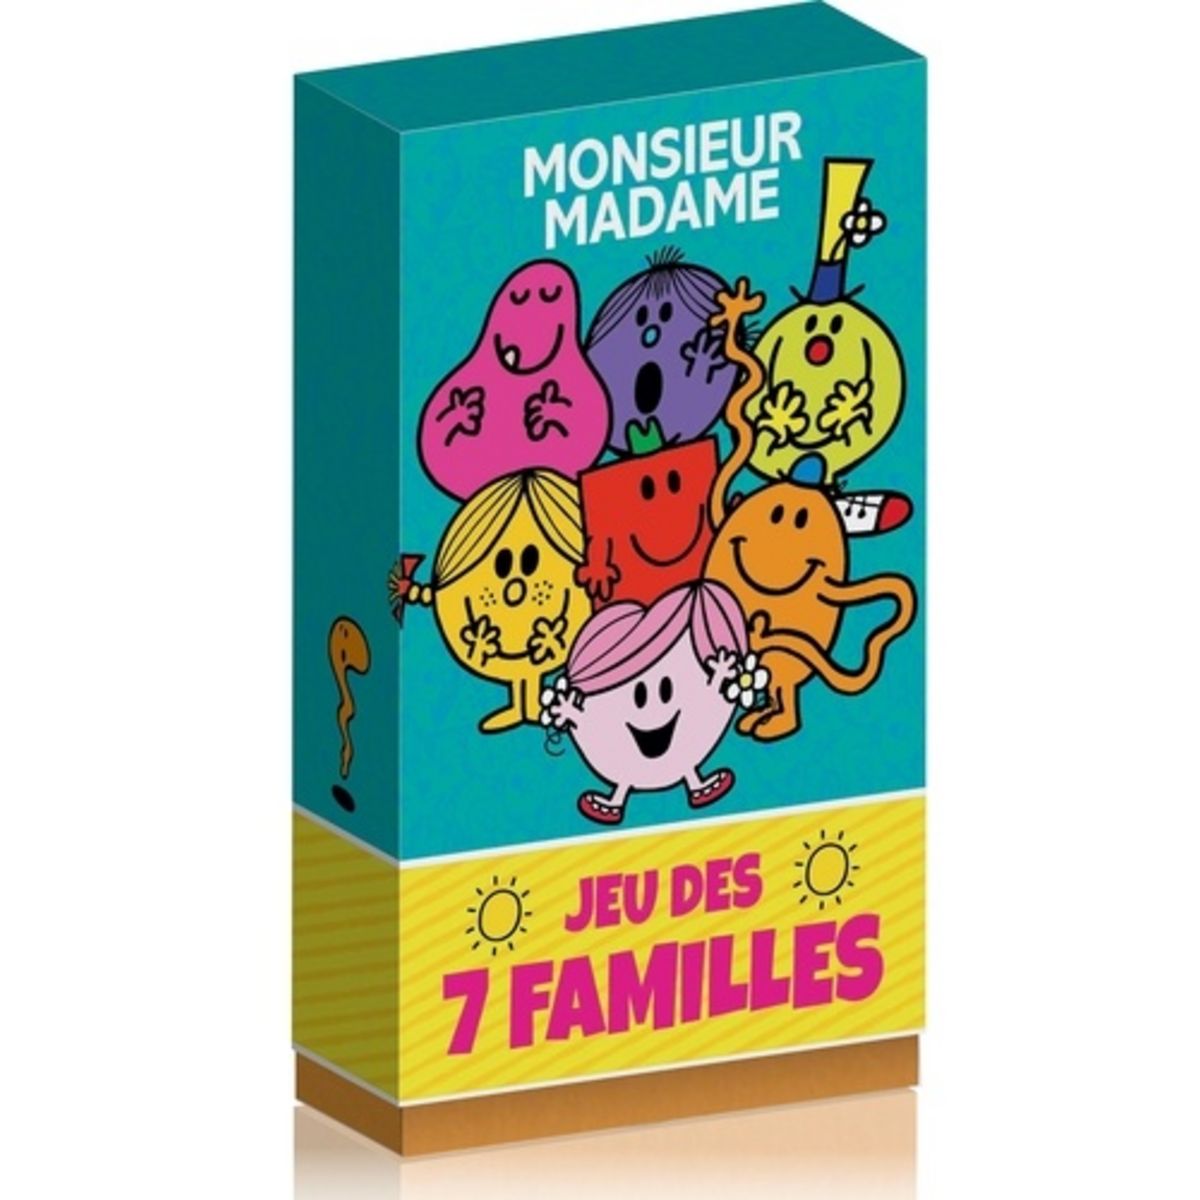  JEU DES 7 FAMILLES MONSIEUR MADAME, Hachette Jeunesse